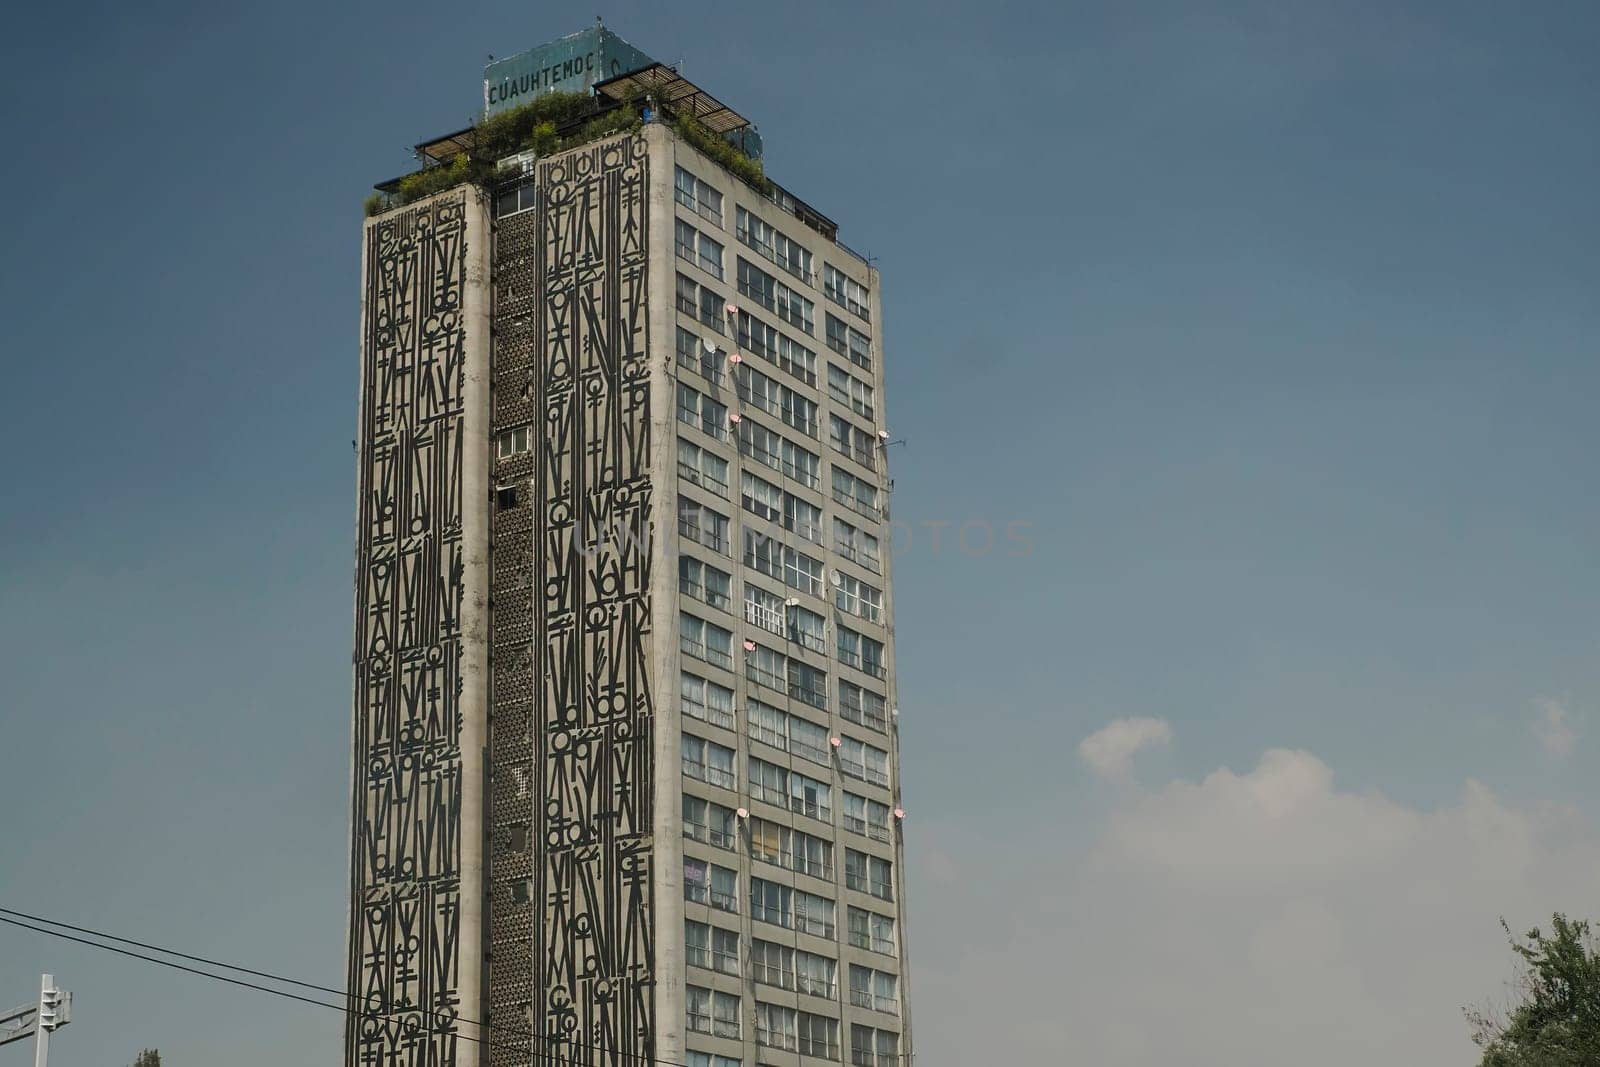 Cuauhtemoc building tower in ciudad de mexico, mexico city by AndreaIzzotti